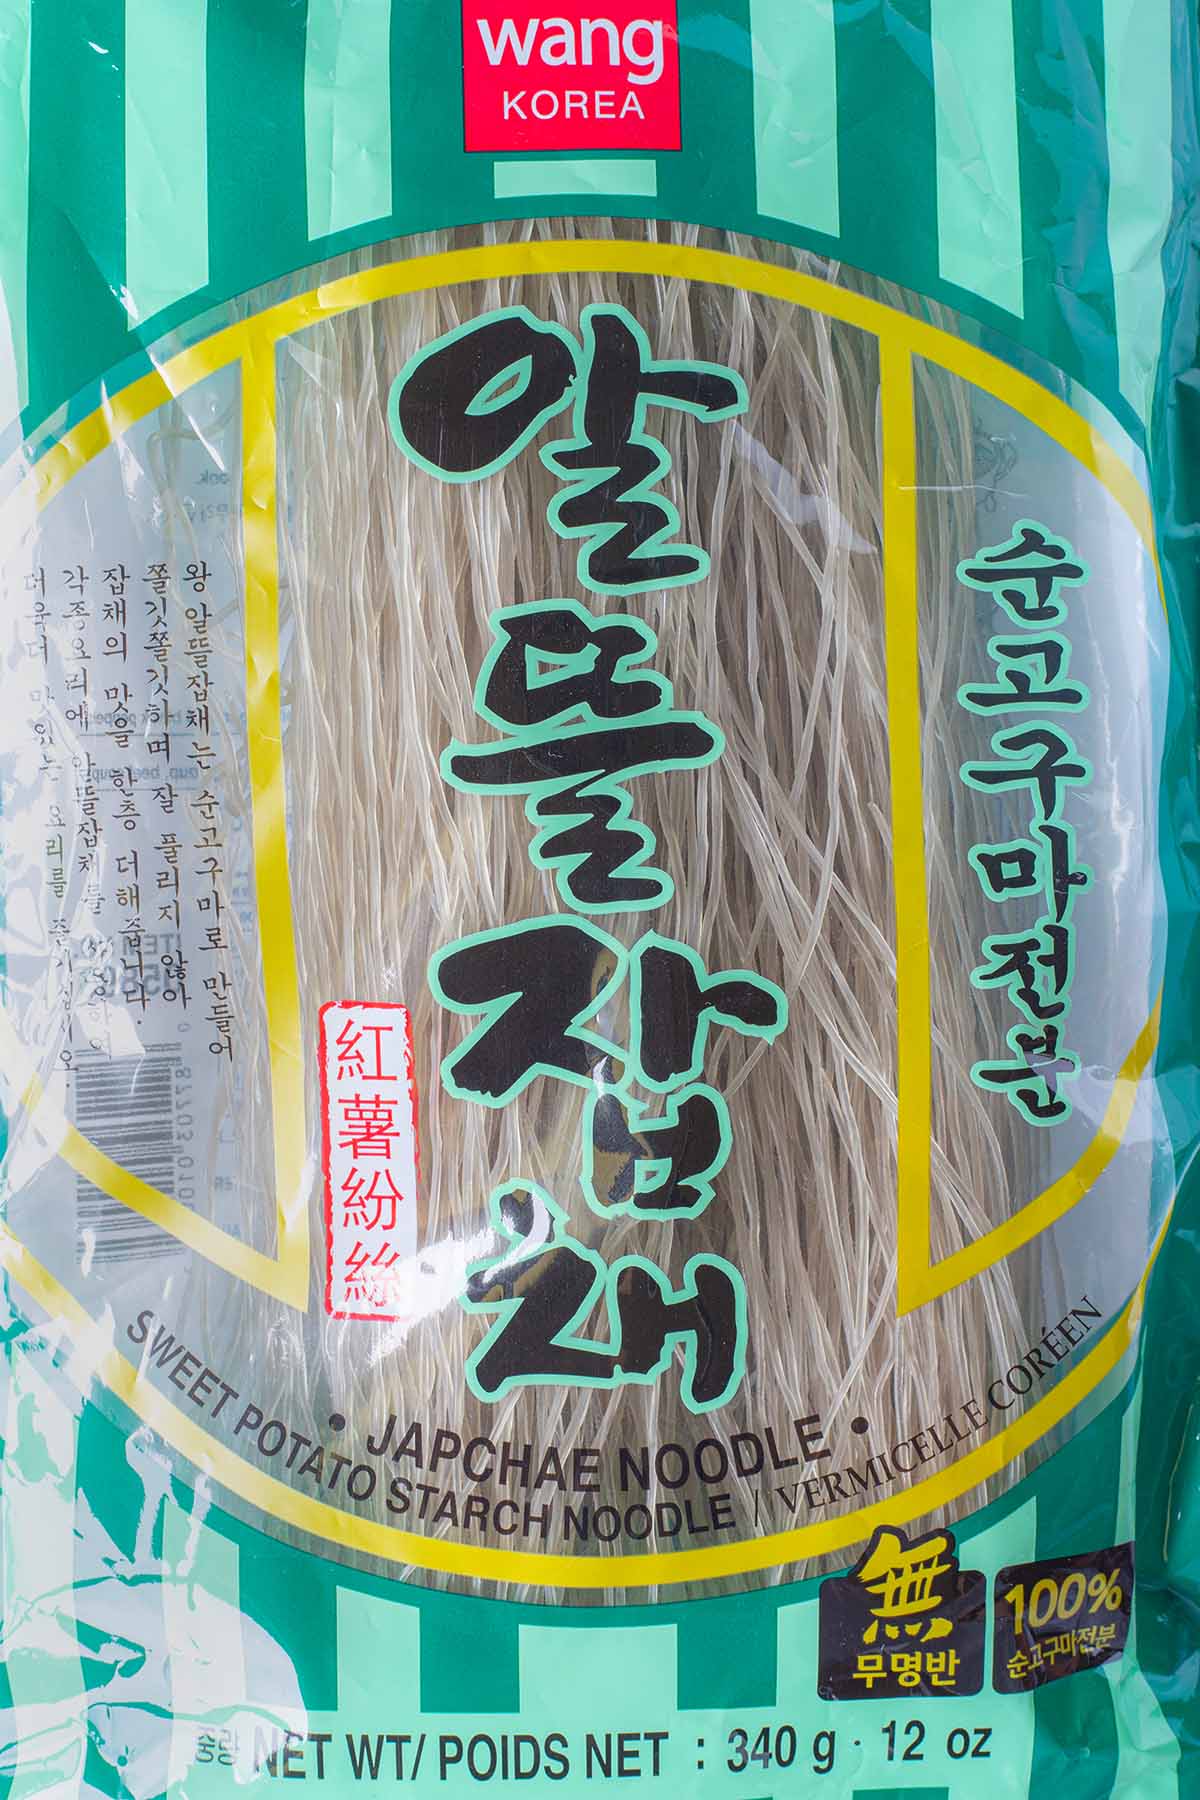 Wang Korea brand japchae, sweet potato starch noodles.